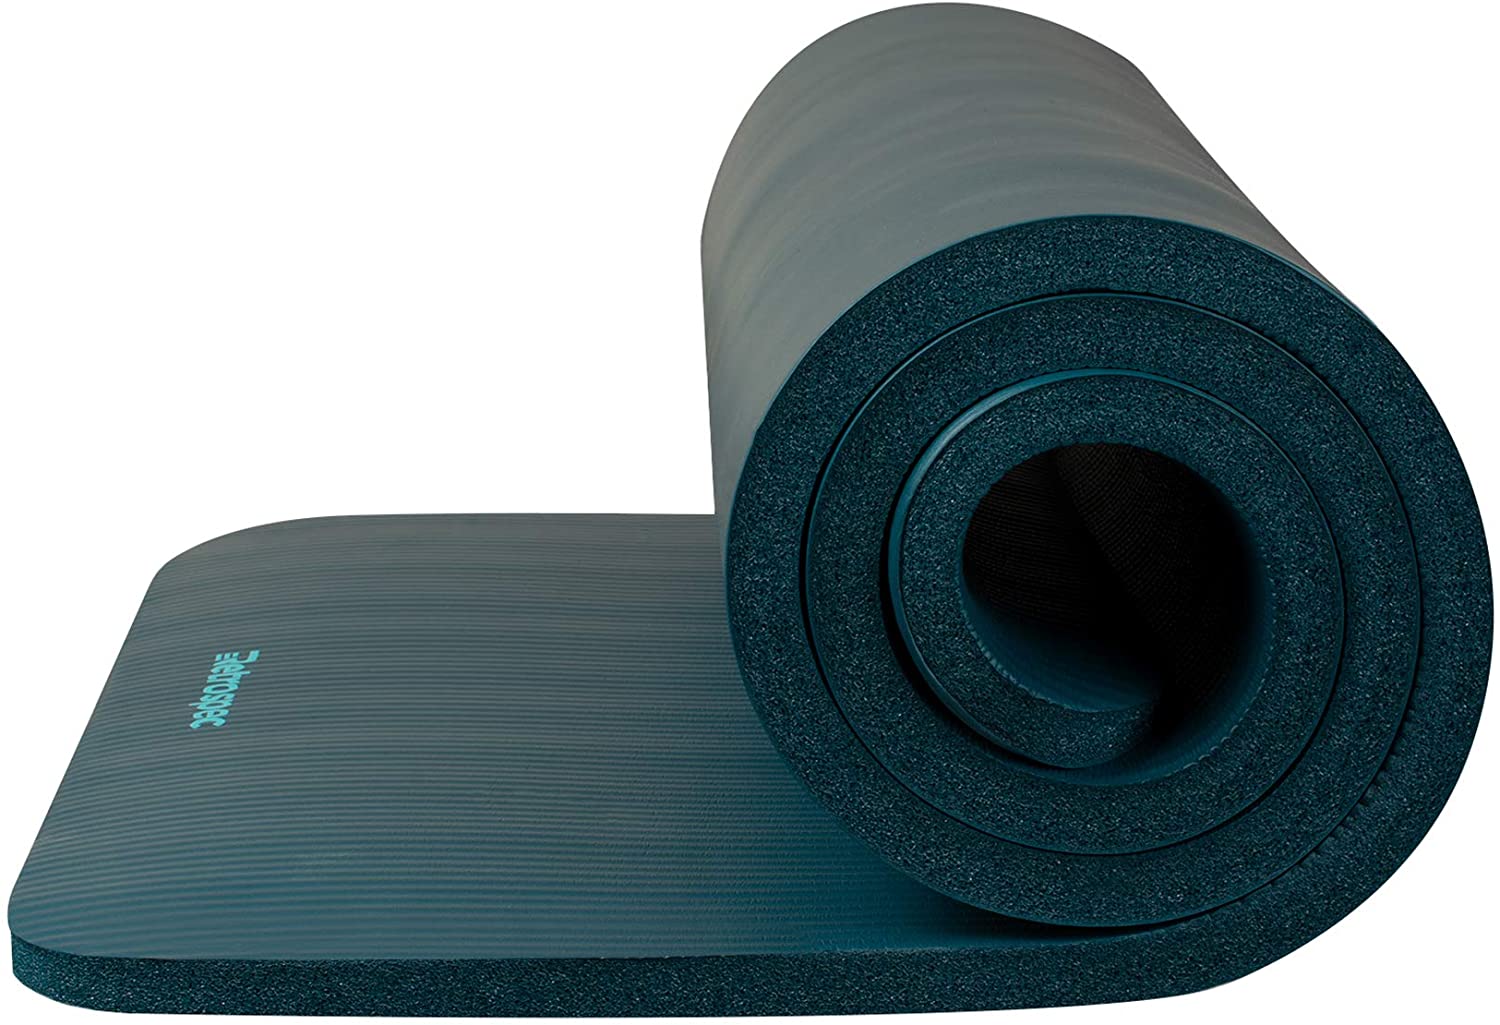 Retrospec Solana Yoga Mat 1 Thick wNylon Strap for Men & Women - Non Slip Exercise Mat for Home Yoga, Pilates, Stretching, Floor